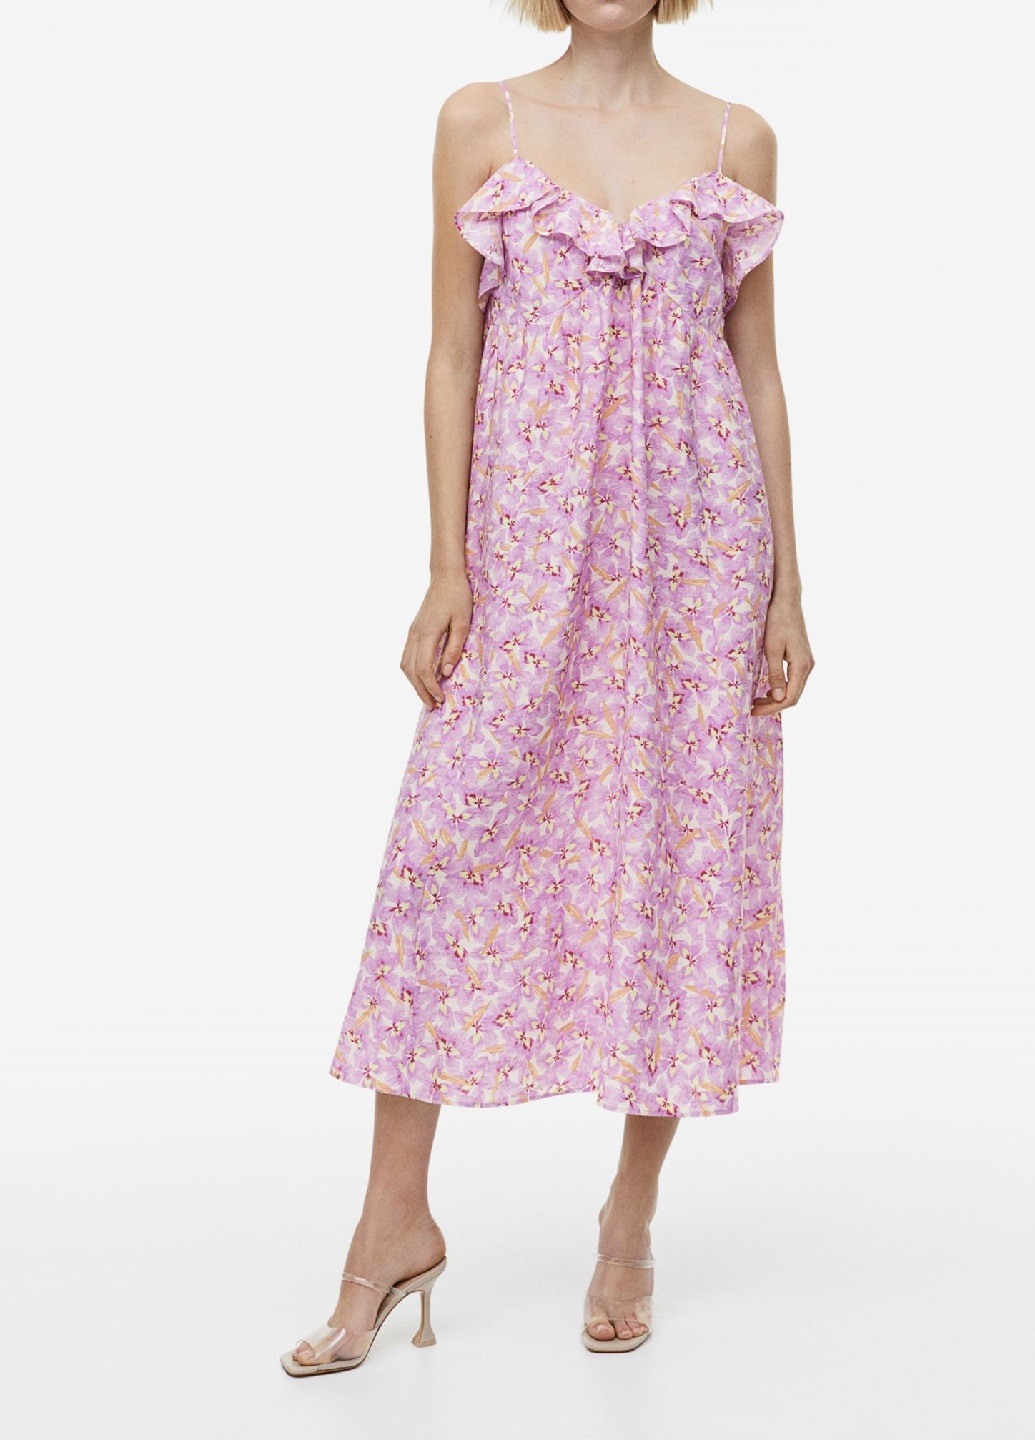 Светло-фиолетовое кэжуал платье H&M однотонное